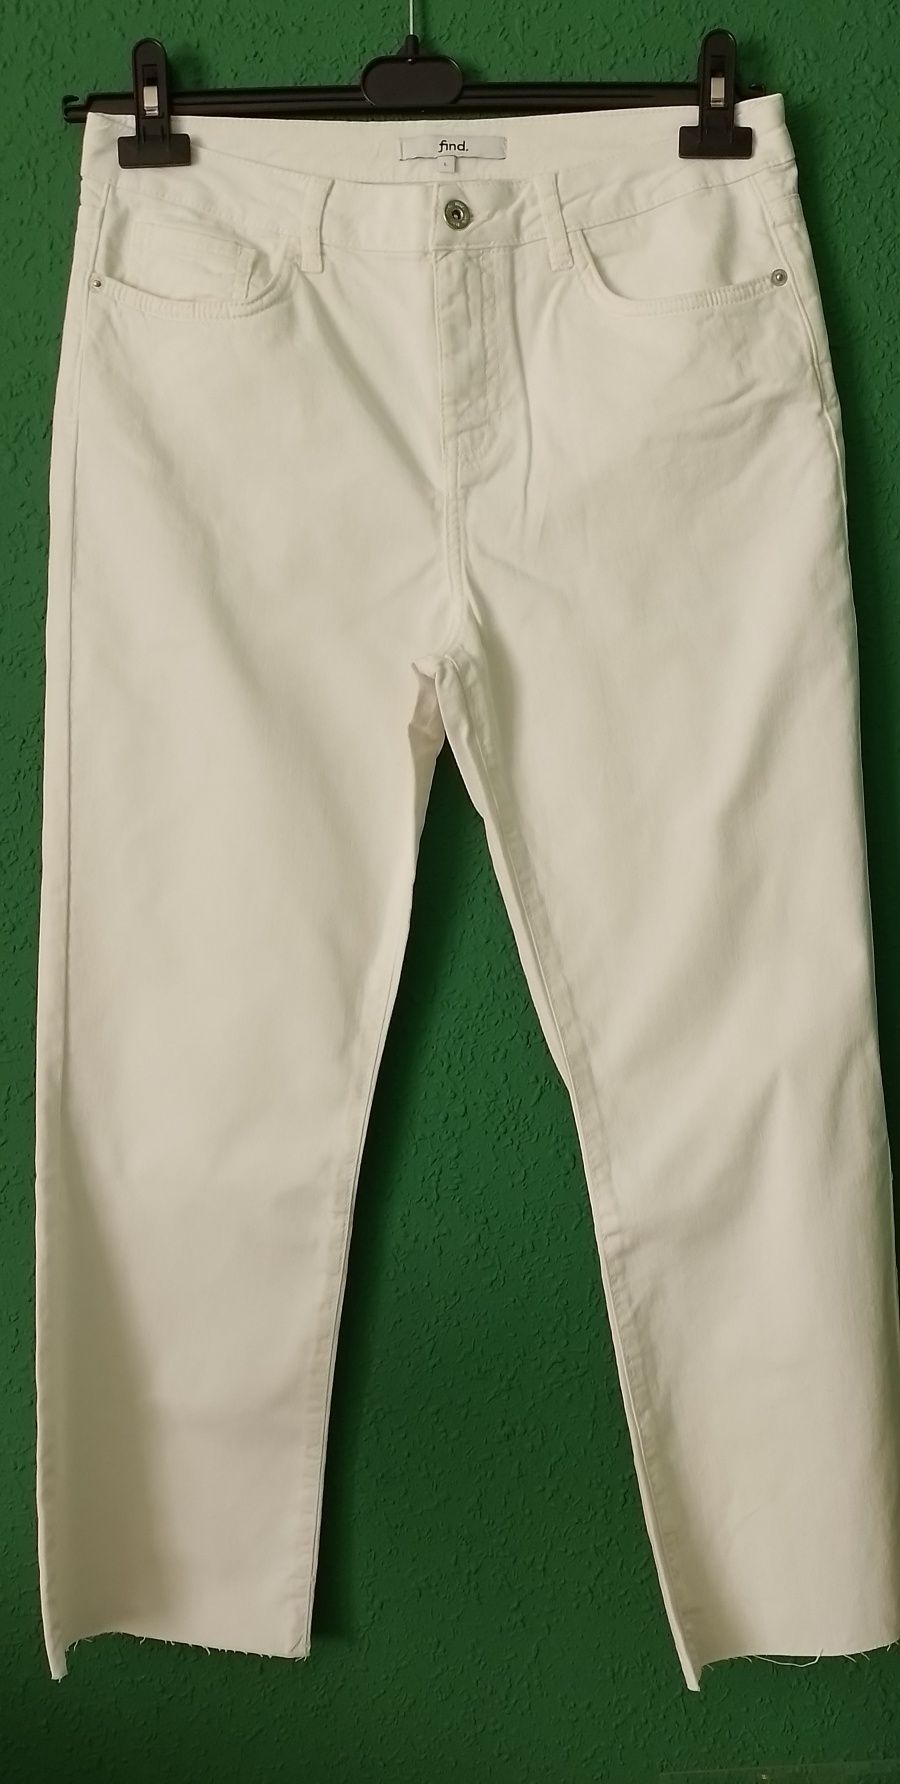 Nowe białe spodnie jeansy damskie szerokie nogawki rozm.L/XL